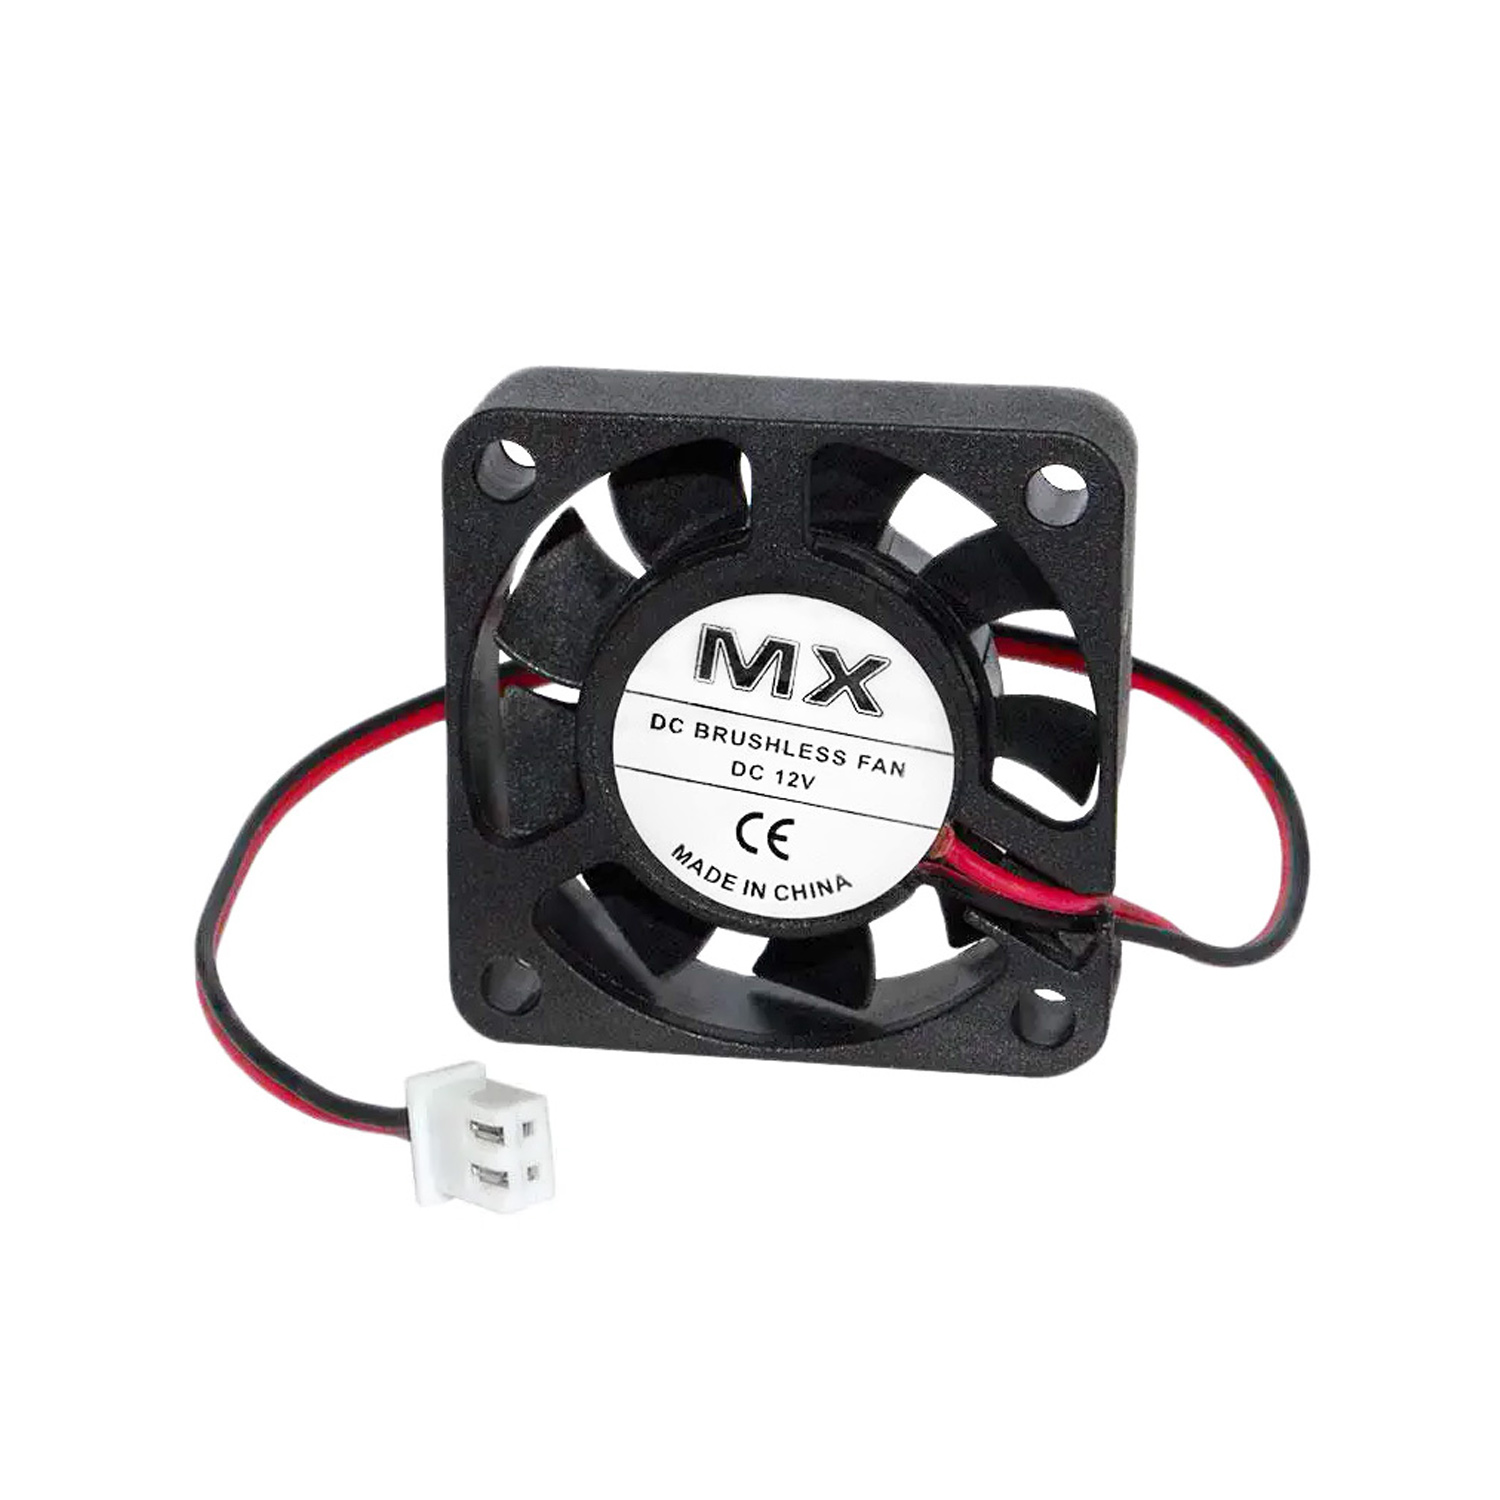 Вентилятор MX-4010S 12V 2pin 40 x 40 x 10 mm, фото